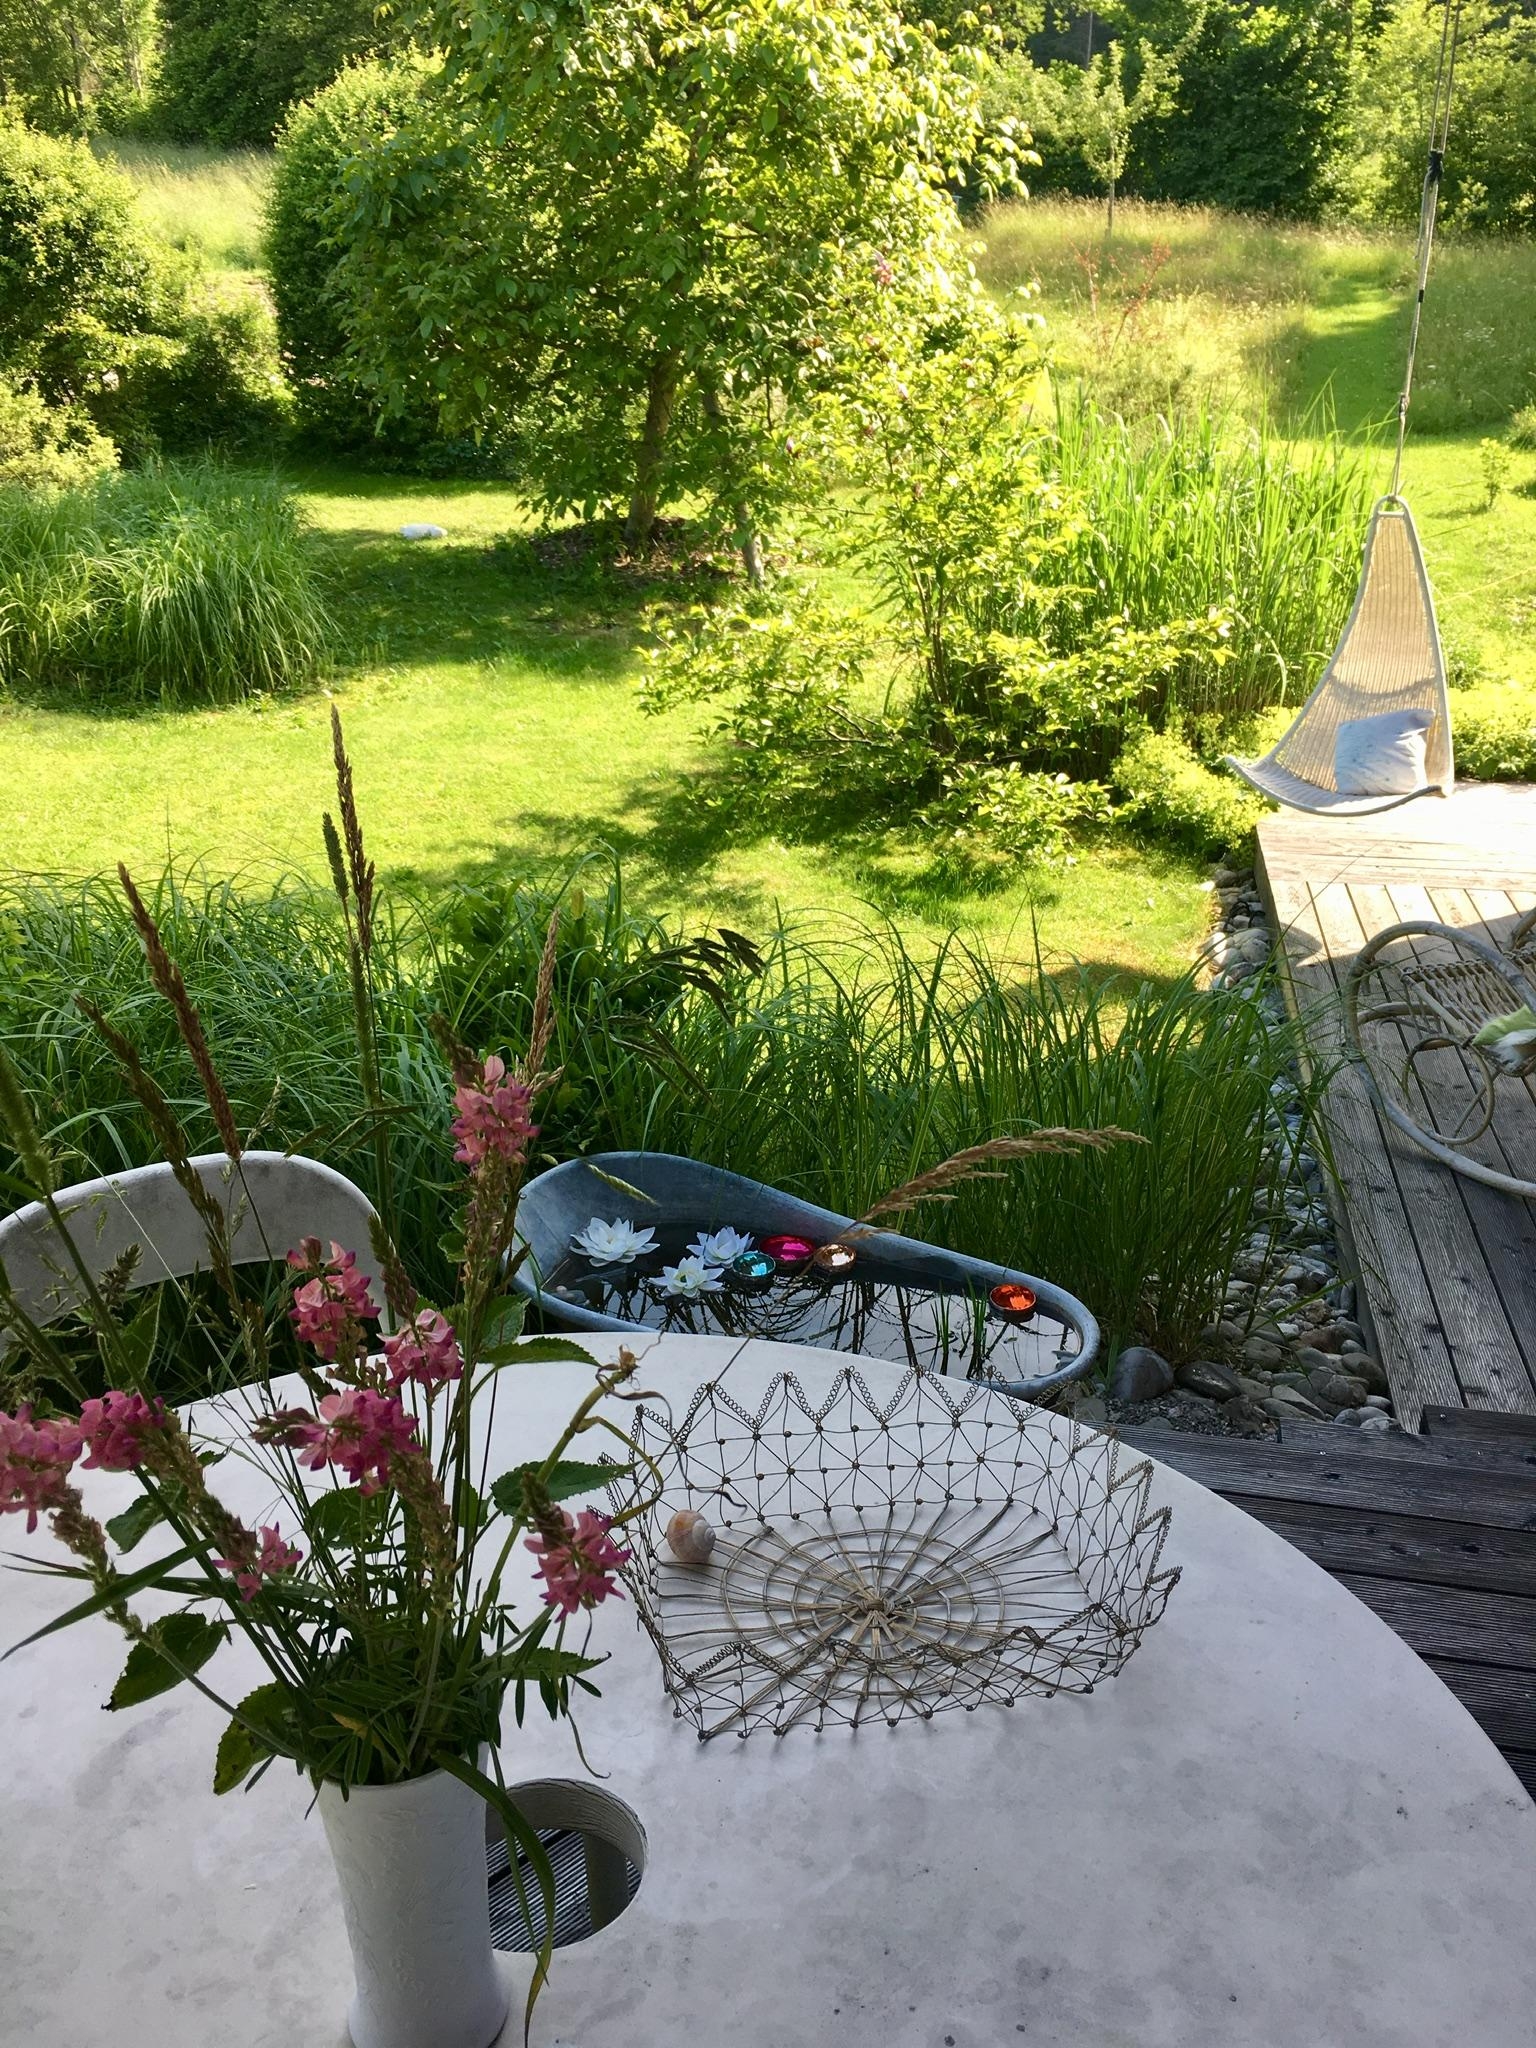 meine kleine oase 🏝 #OutdoorWeek #gartengestaltung #sommer #schattigesplätzchen 